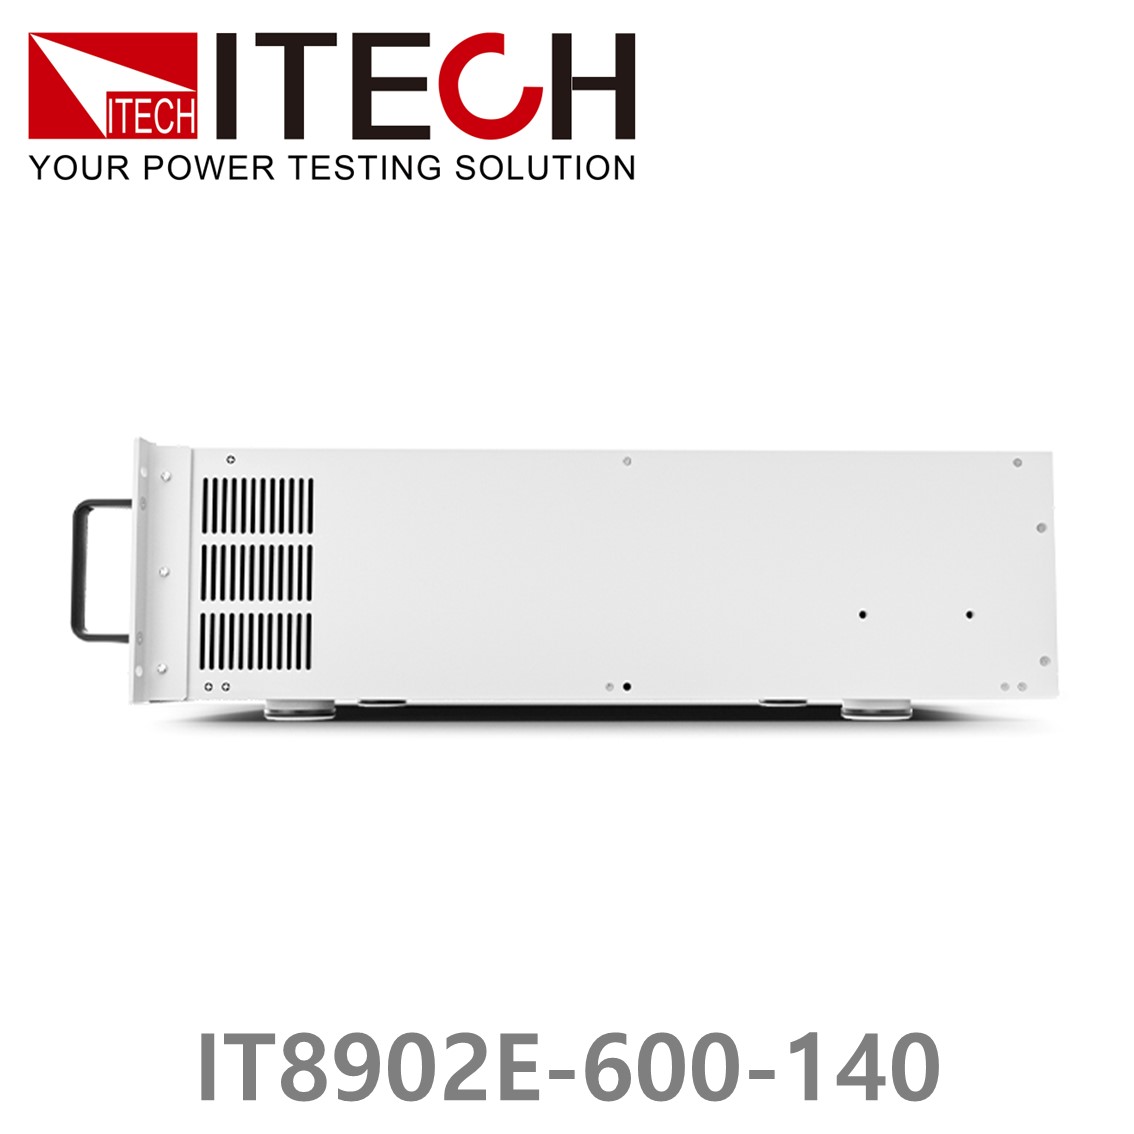 [ ITECH ] IT8902E-600-140 고성능 고전력 DC 전자로드 600V/140A/2kW (4U)